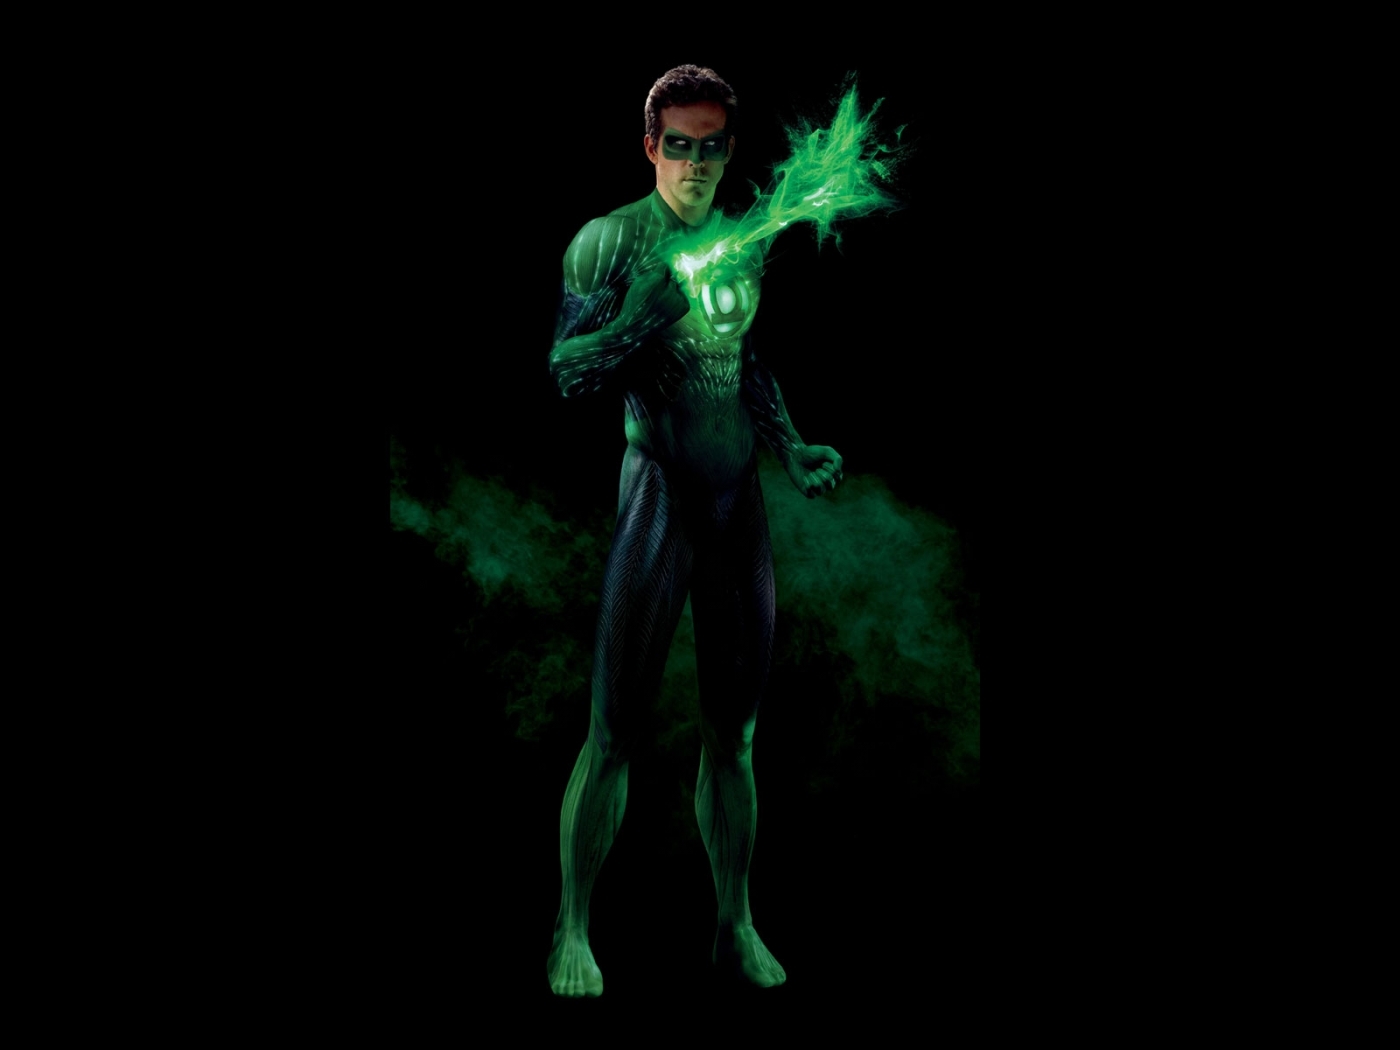 Популярные заставки и фоны Зеленый Фонарь (Green Lantern) на компьютер